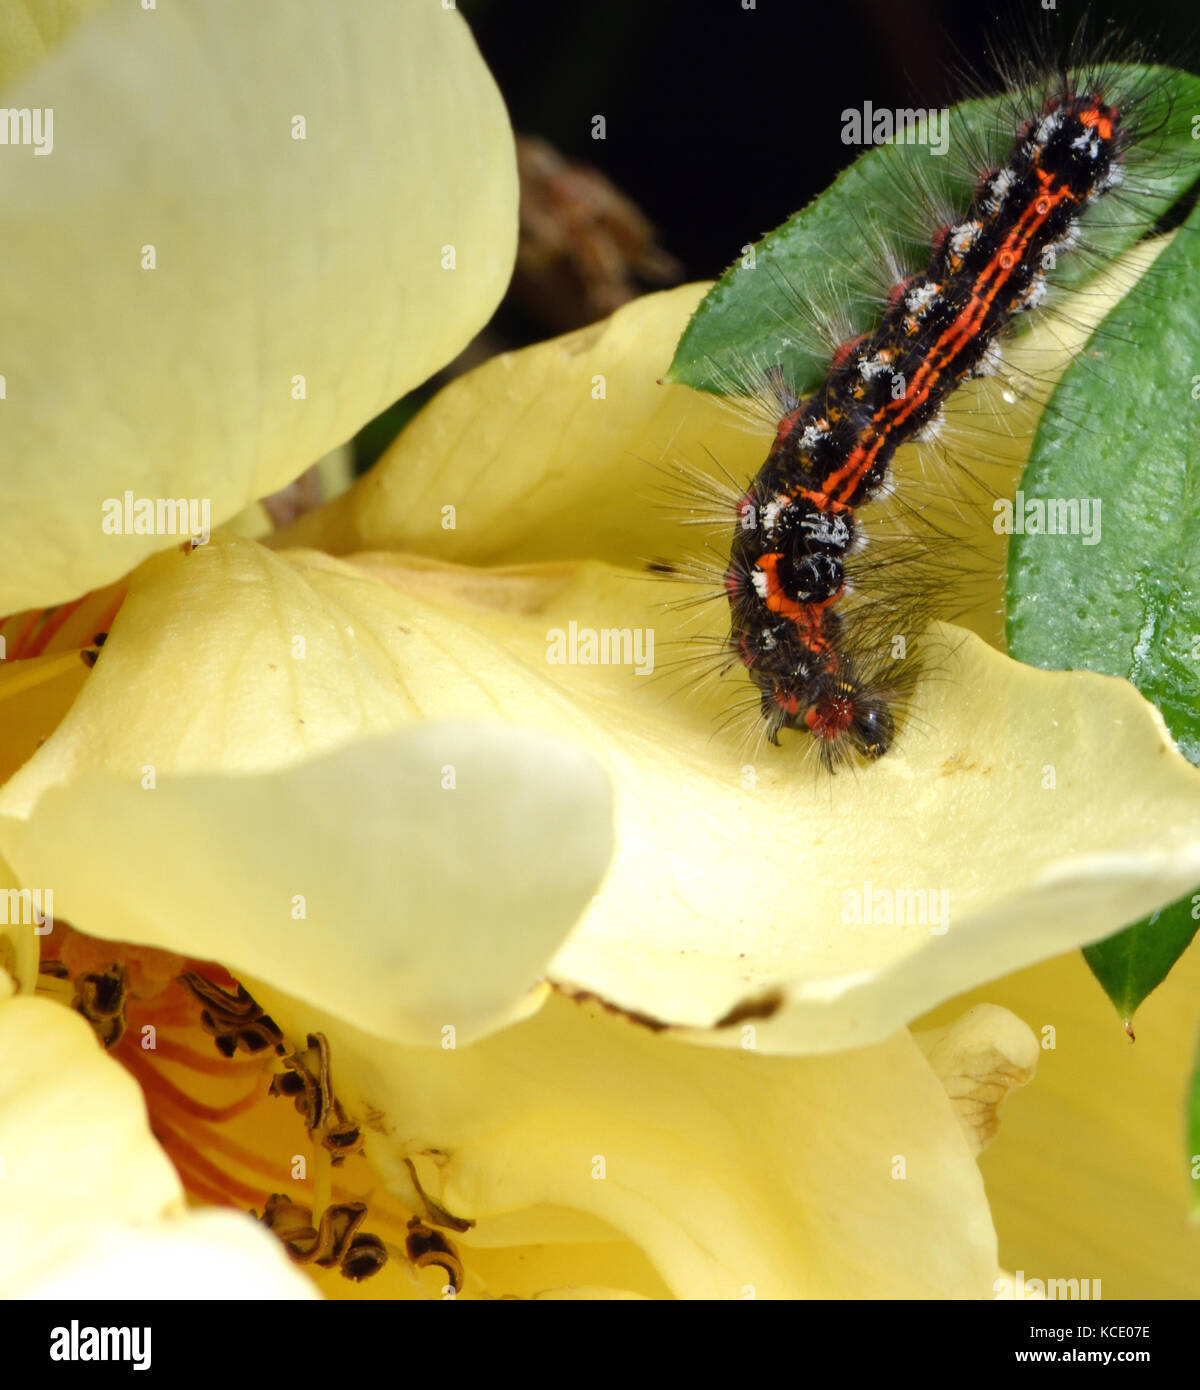 Lava, Caterpillar d'une couleur jaune-queue, goldtail moth ou swan (Euproctis similis) se nourrissant d'un pétale de rose. Bedgebury Forêt, Kent, UK Banque D'Images